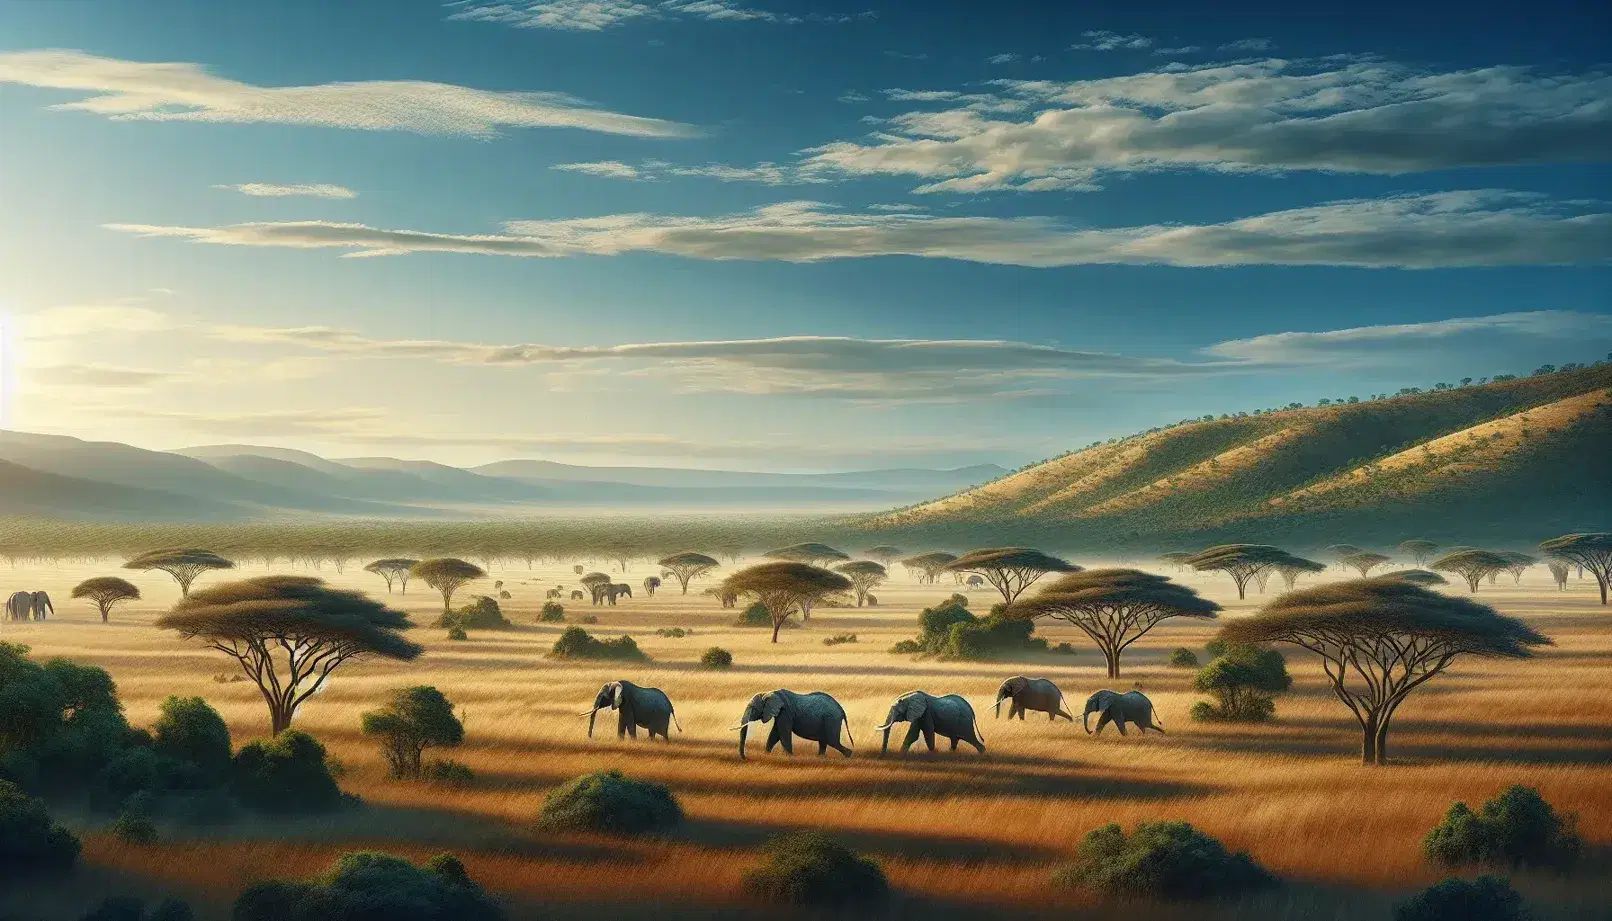 Manada de elefantes caminando en línea en una sabana africana con árboles de acacia, colinas verdes al fondo y cielo azul despejado.